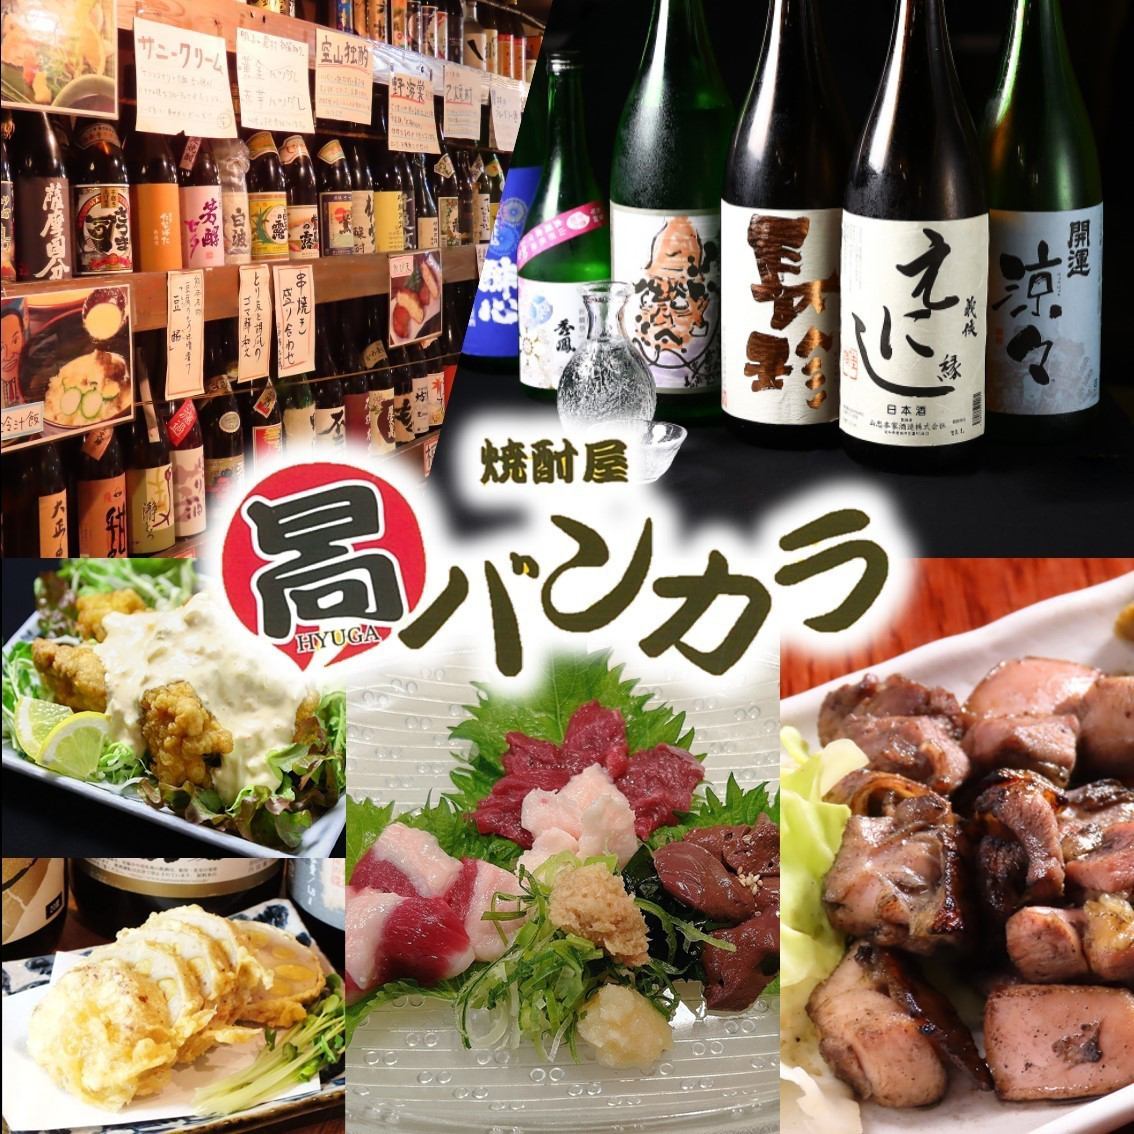 位于名古屋荣，可以品尝到店主精心挑选的300种正宗烧酒的宫崎·九州料理居酒屋。